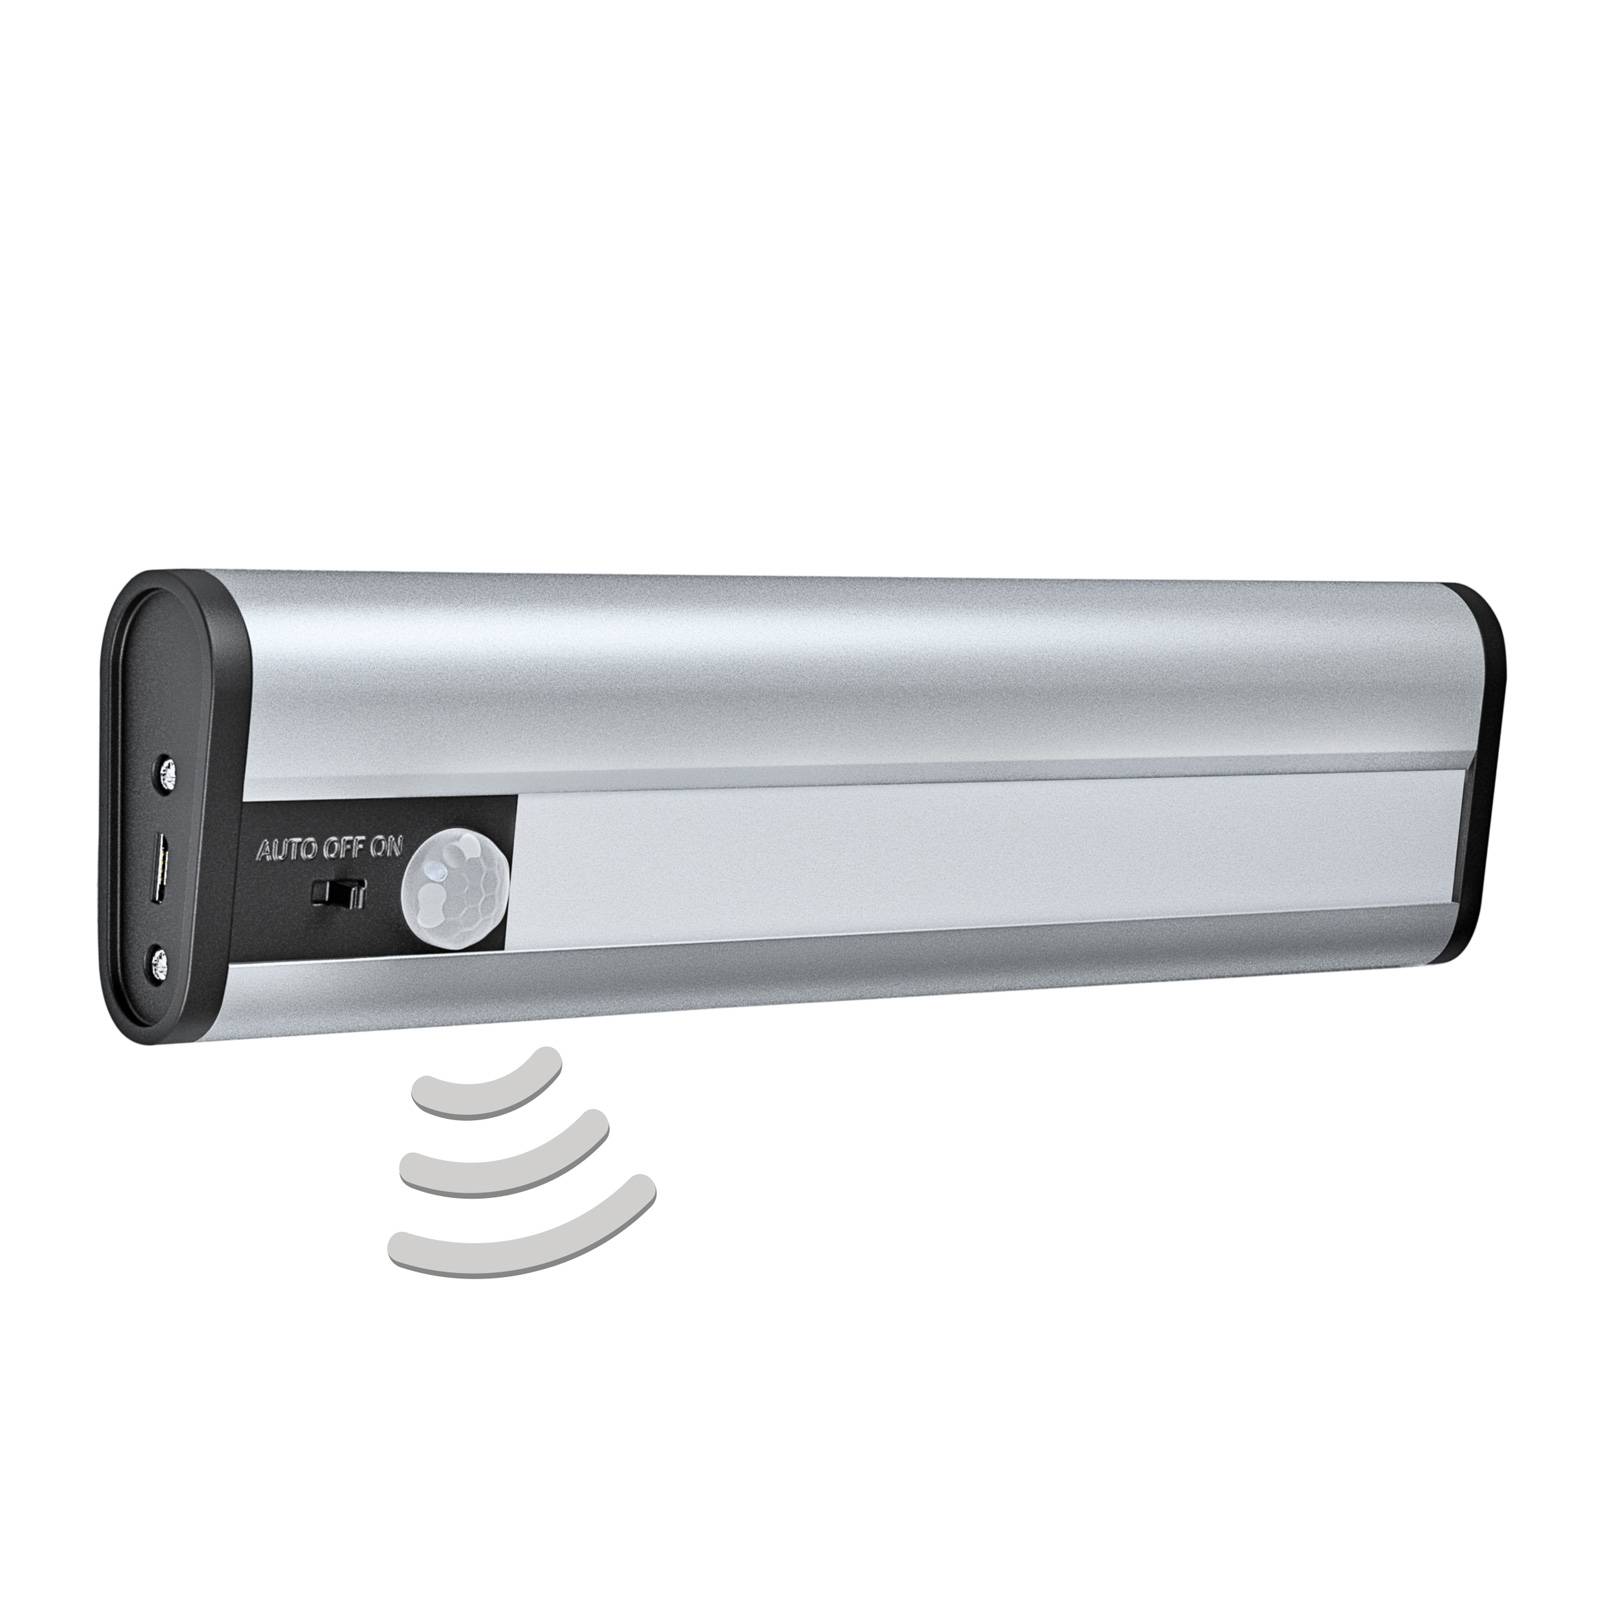 LEDVANCE Linear Mobile podhľadové svetlo USB 20 cm